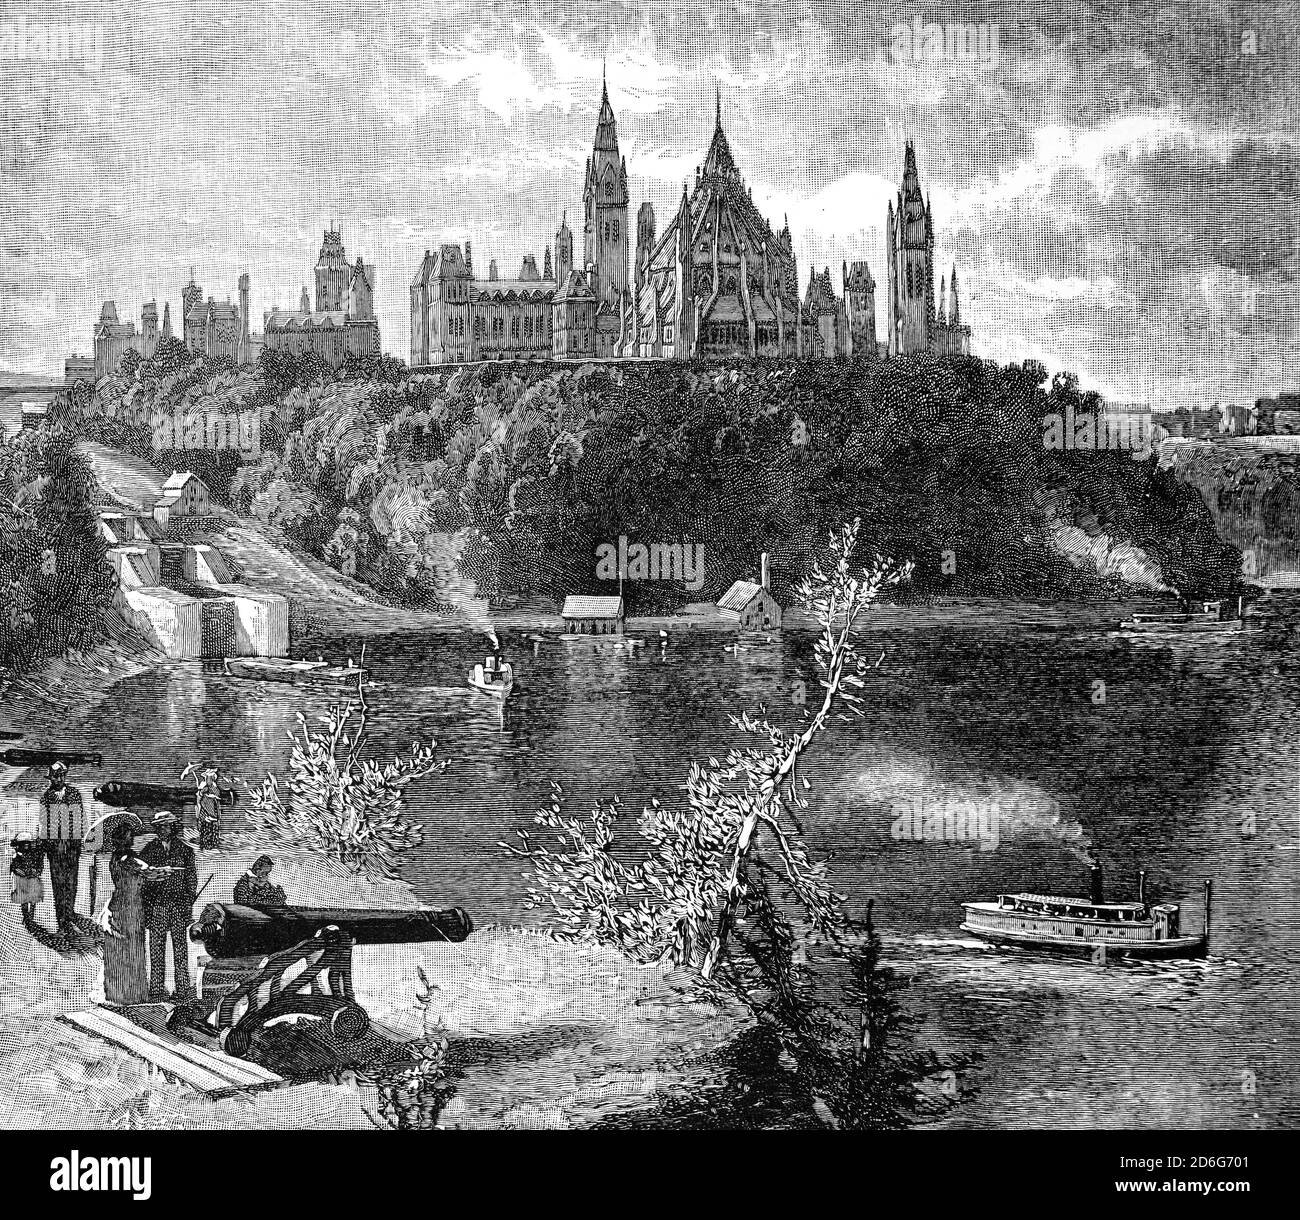 Ein Blick aus dem 19. Jahrhundert auf die Parlamentsgebäude am südlichen Ufer des Ottawa River in der Innenstadt von Ottawa, Ontario, Kanada, von Major's Hill aus. Die gotische Revival Suite von Gebäuden war ursprünglich der Ort einer Militärbasis im 18. Und frühen 19. Jahrhundert. Die Entwicklung des Gebiets zu einem Regierungsviertel begann 1859, nachdem Königin Victoria Ottawa als Hauptstadt der Provinz Kanada gewählt hatte. Stockfoto